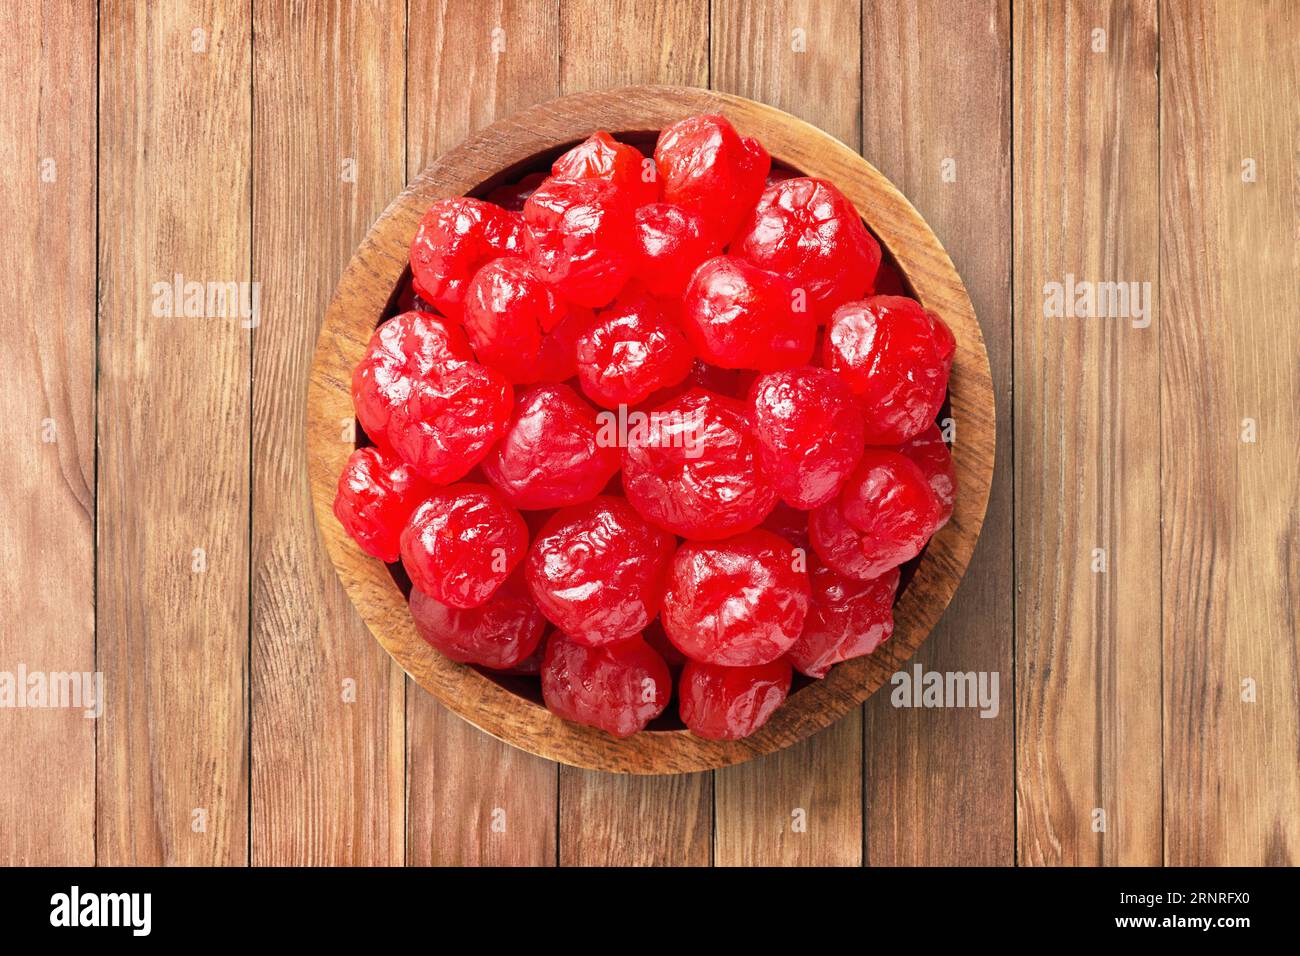 frutta candita, ciliegie secche con zucchero in una ciotola di legno sullo sfondo della tavola. cibo vegetale sano. Foto Stock